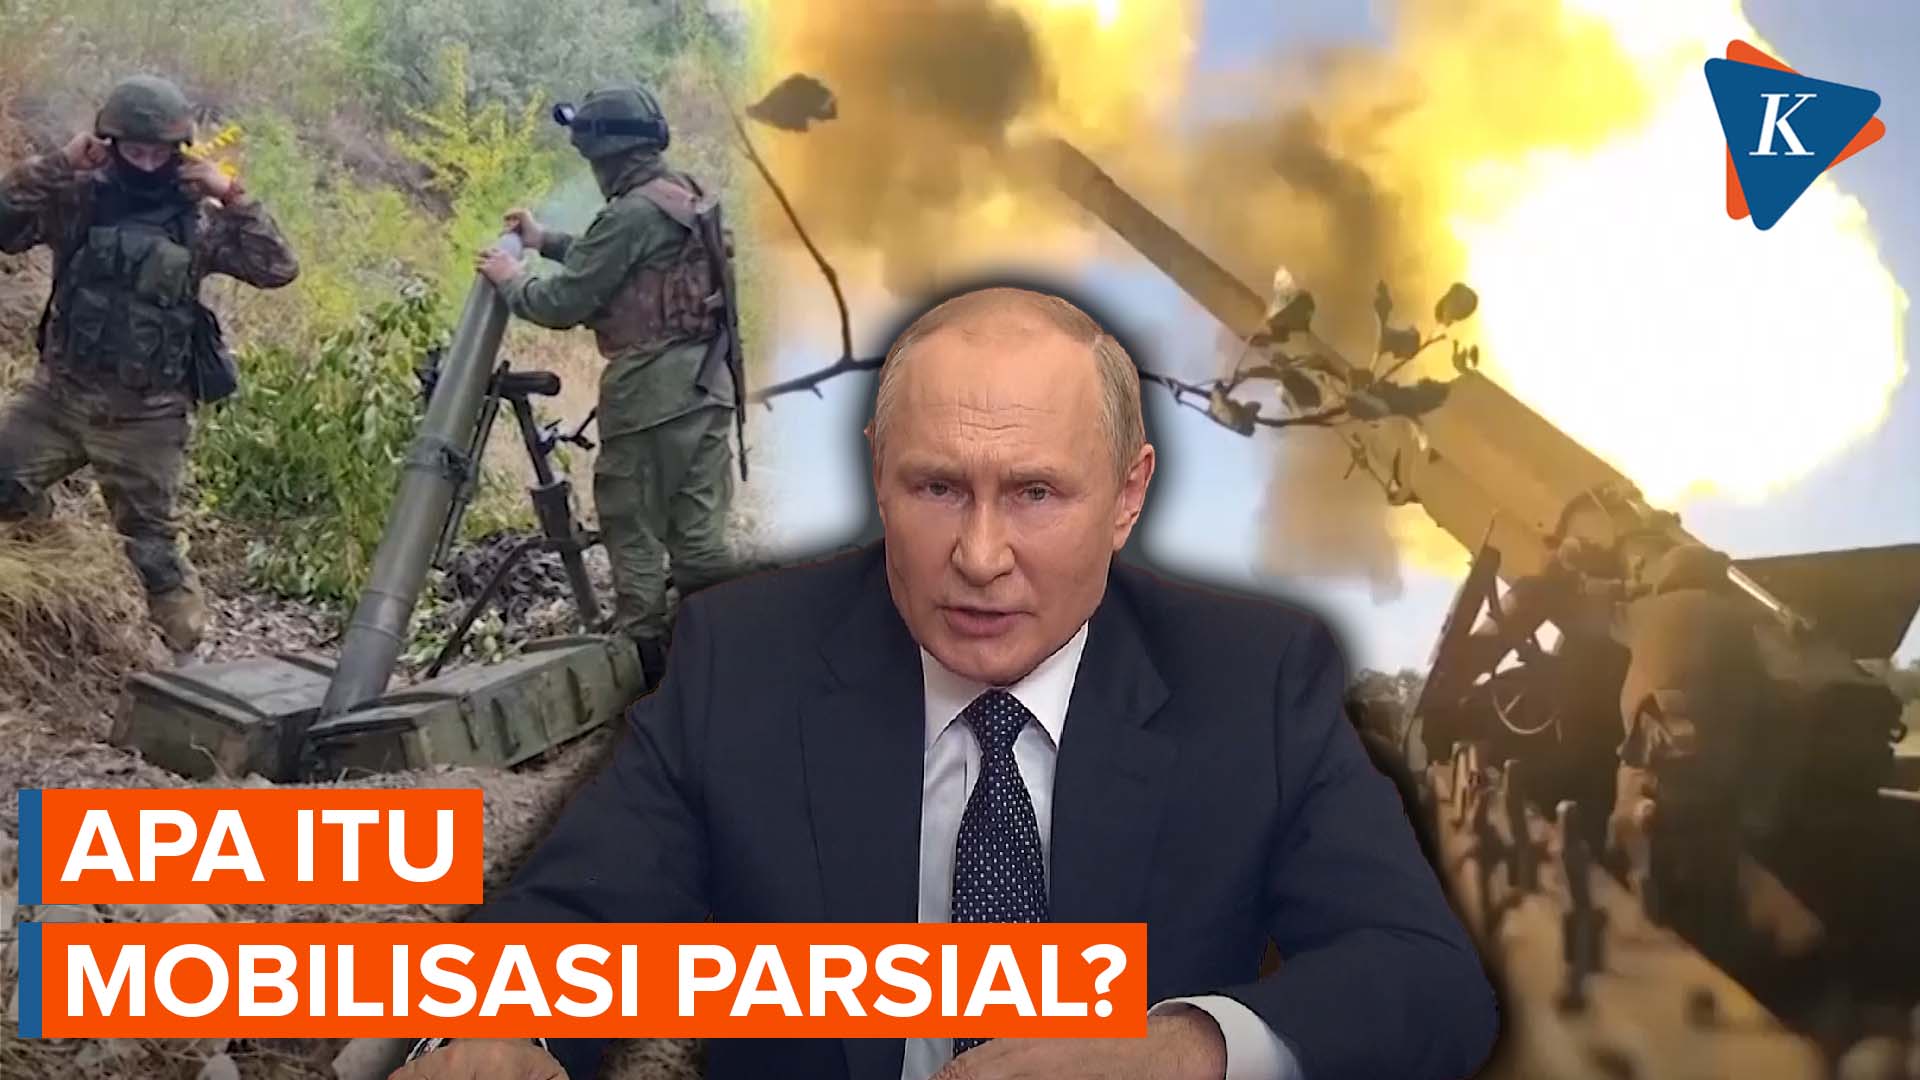 Putin Perintahkan Mobilisasi Parsial, Ini Dampak Bagi Warga Rusia dan Ukraina